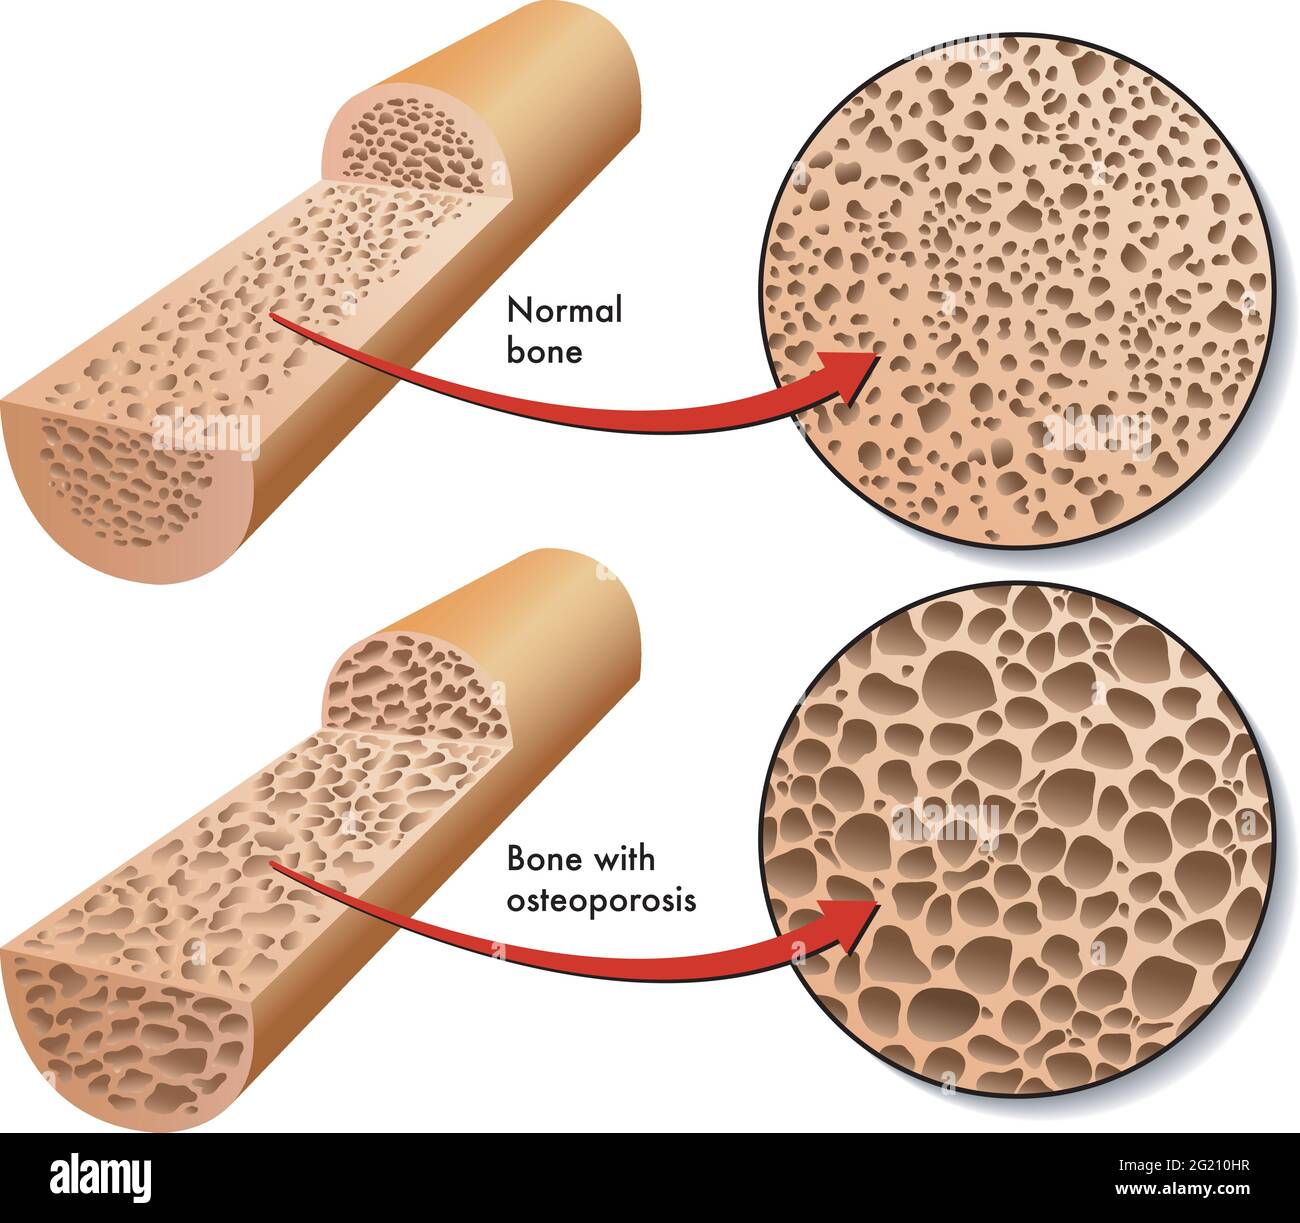 La ilustración médica compara la sección de un hueso normal con la sección de un hueso afectado por la osteoporosis. Ilustración del Vector